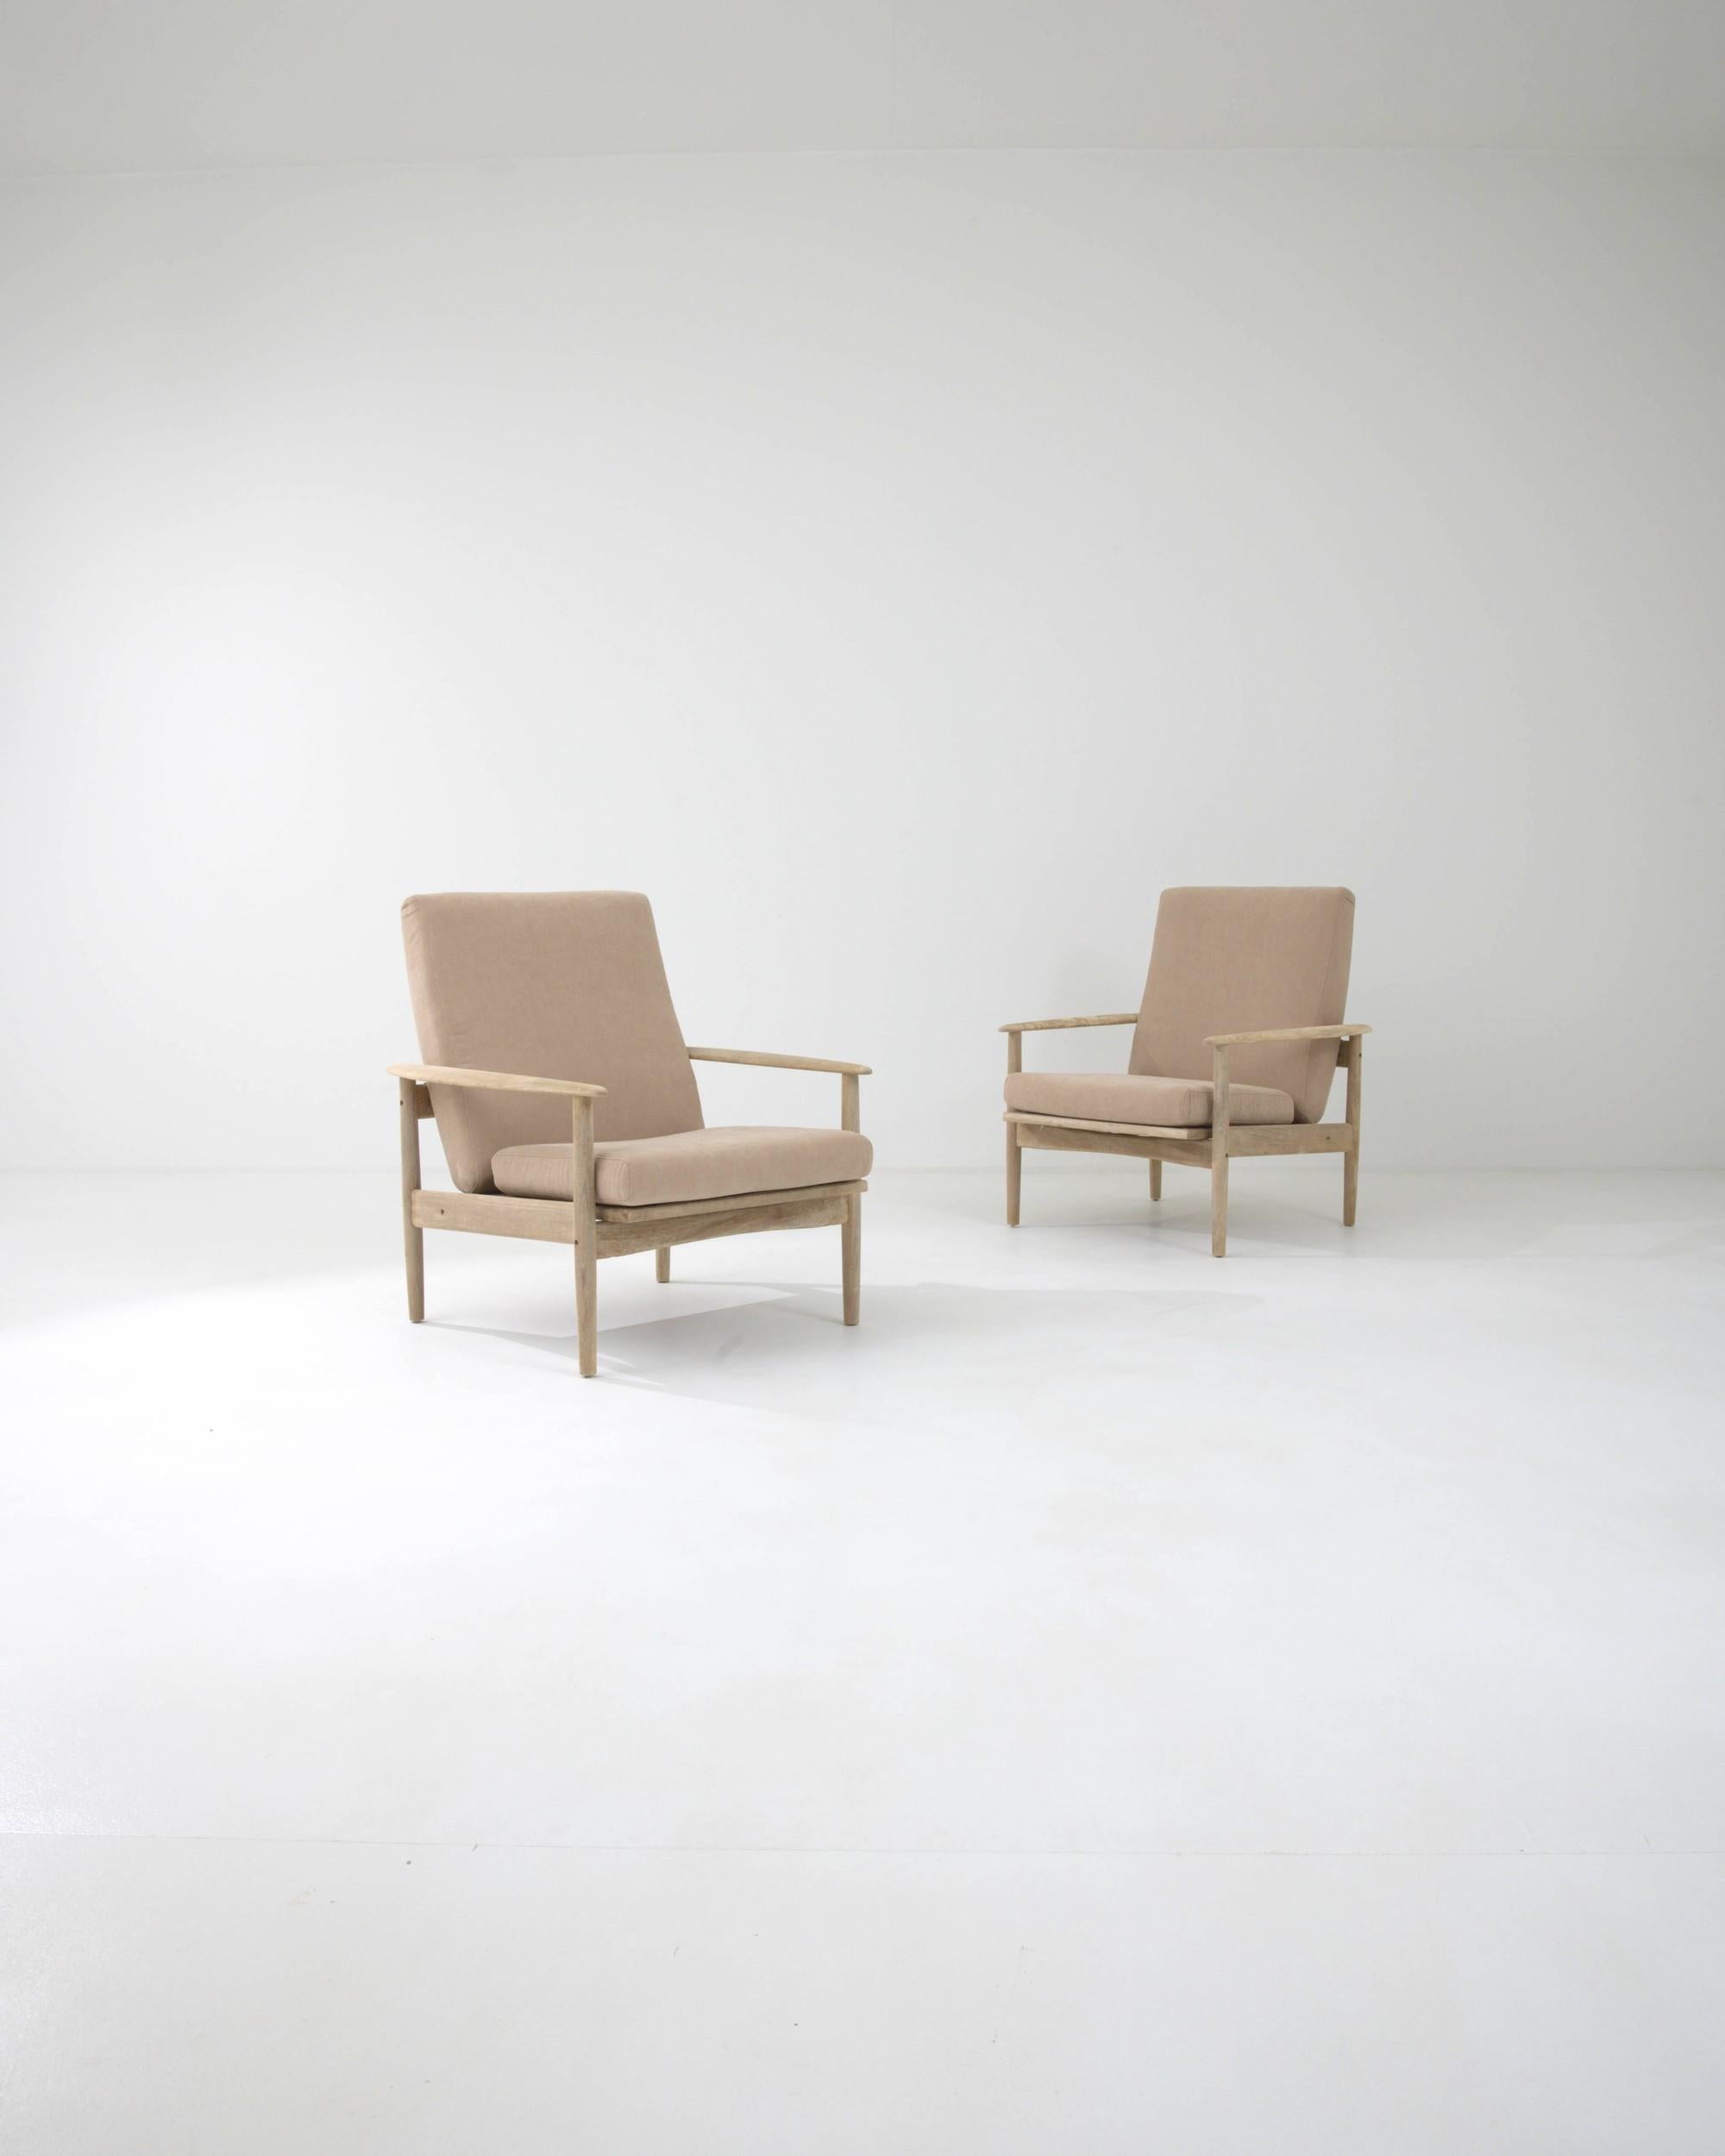 Dieses attraktive Paar Vintage-Sessel kombiniert eine stilvolle modernistische Silhouette mit einer beruhigenden Farbpalette. Die klaren Linien des in den 1970er Jahren in Tschechien gefertigten Holzrahmens werden durch die sanft gerundeten